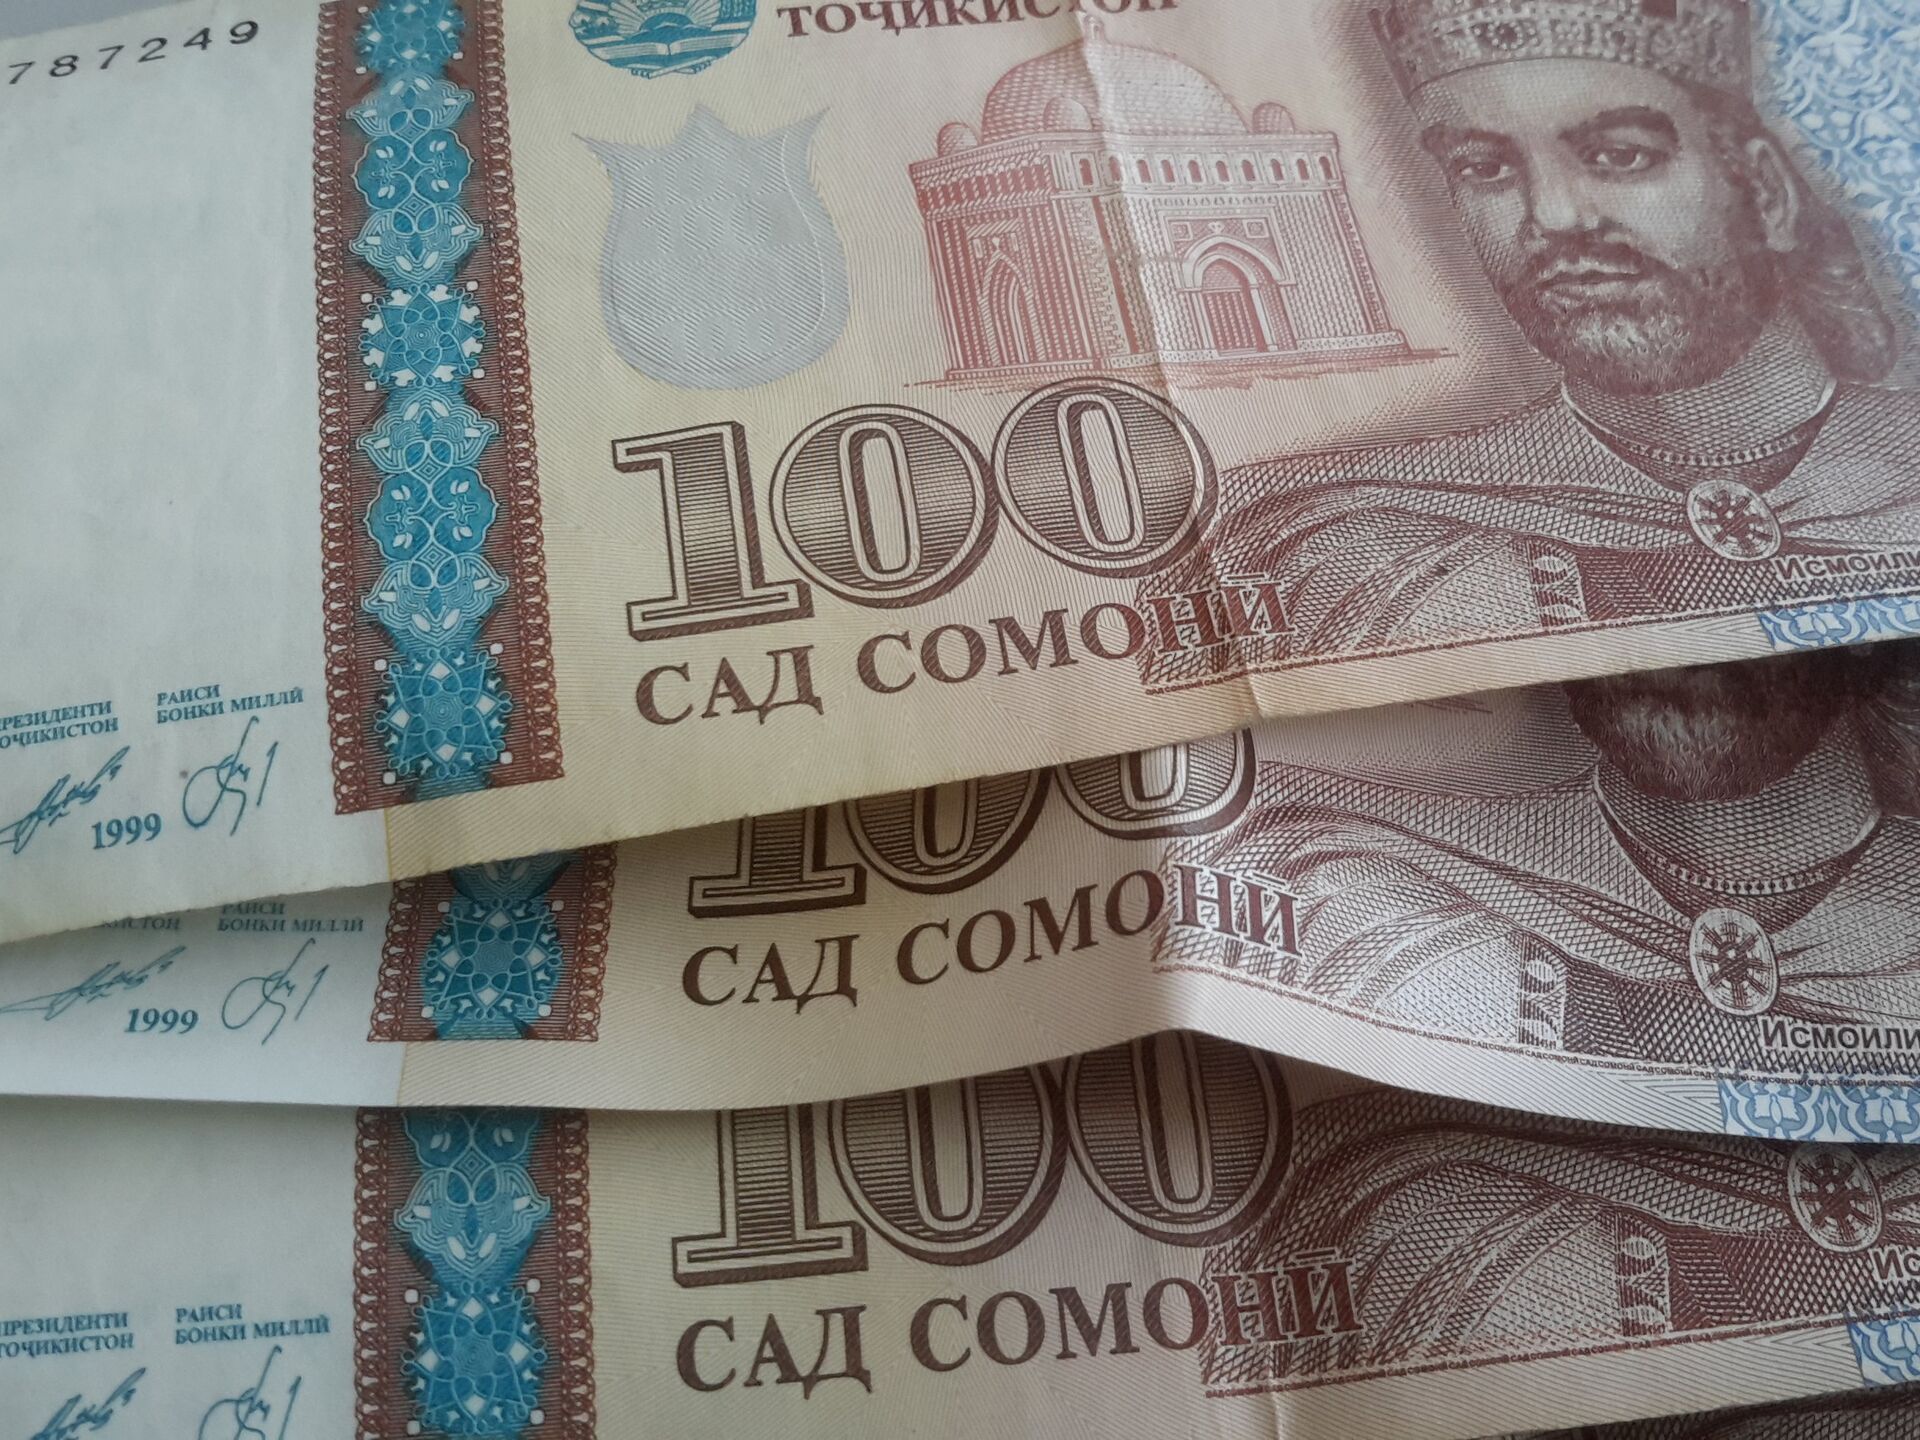 500 таджикски. 1000 Сомона. 5000 Сомони. Таджикистан сомон пул. Деньги Таджикистана.